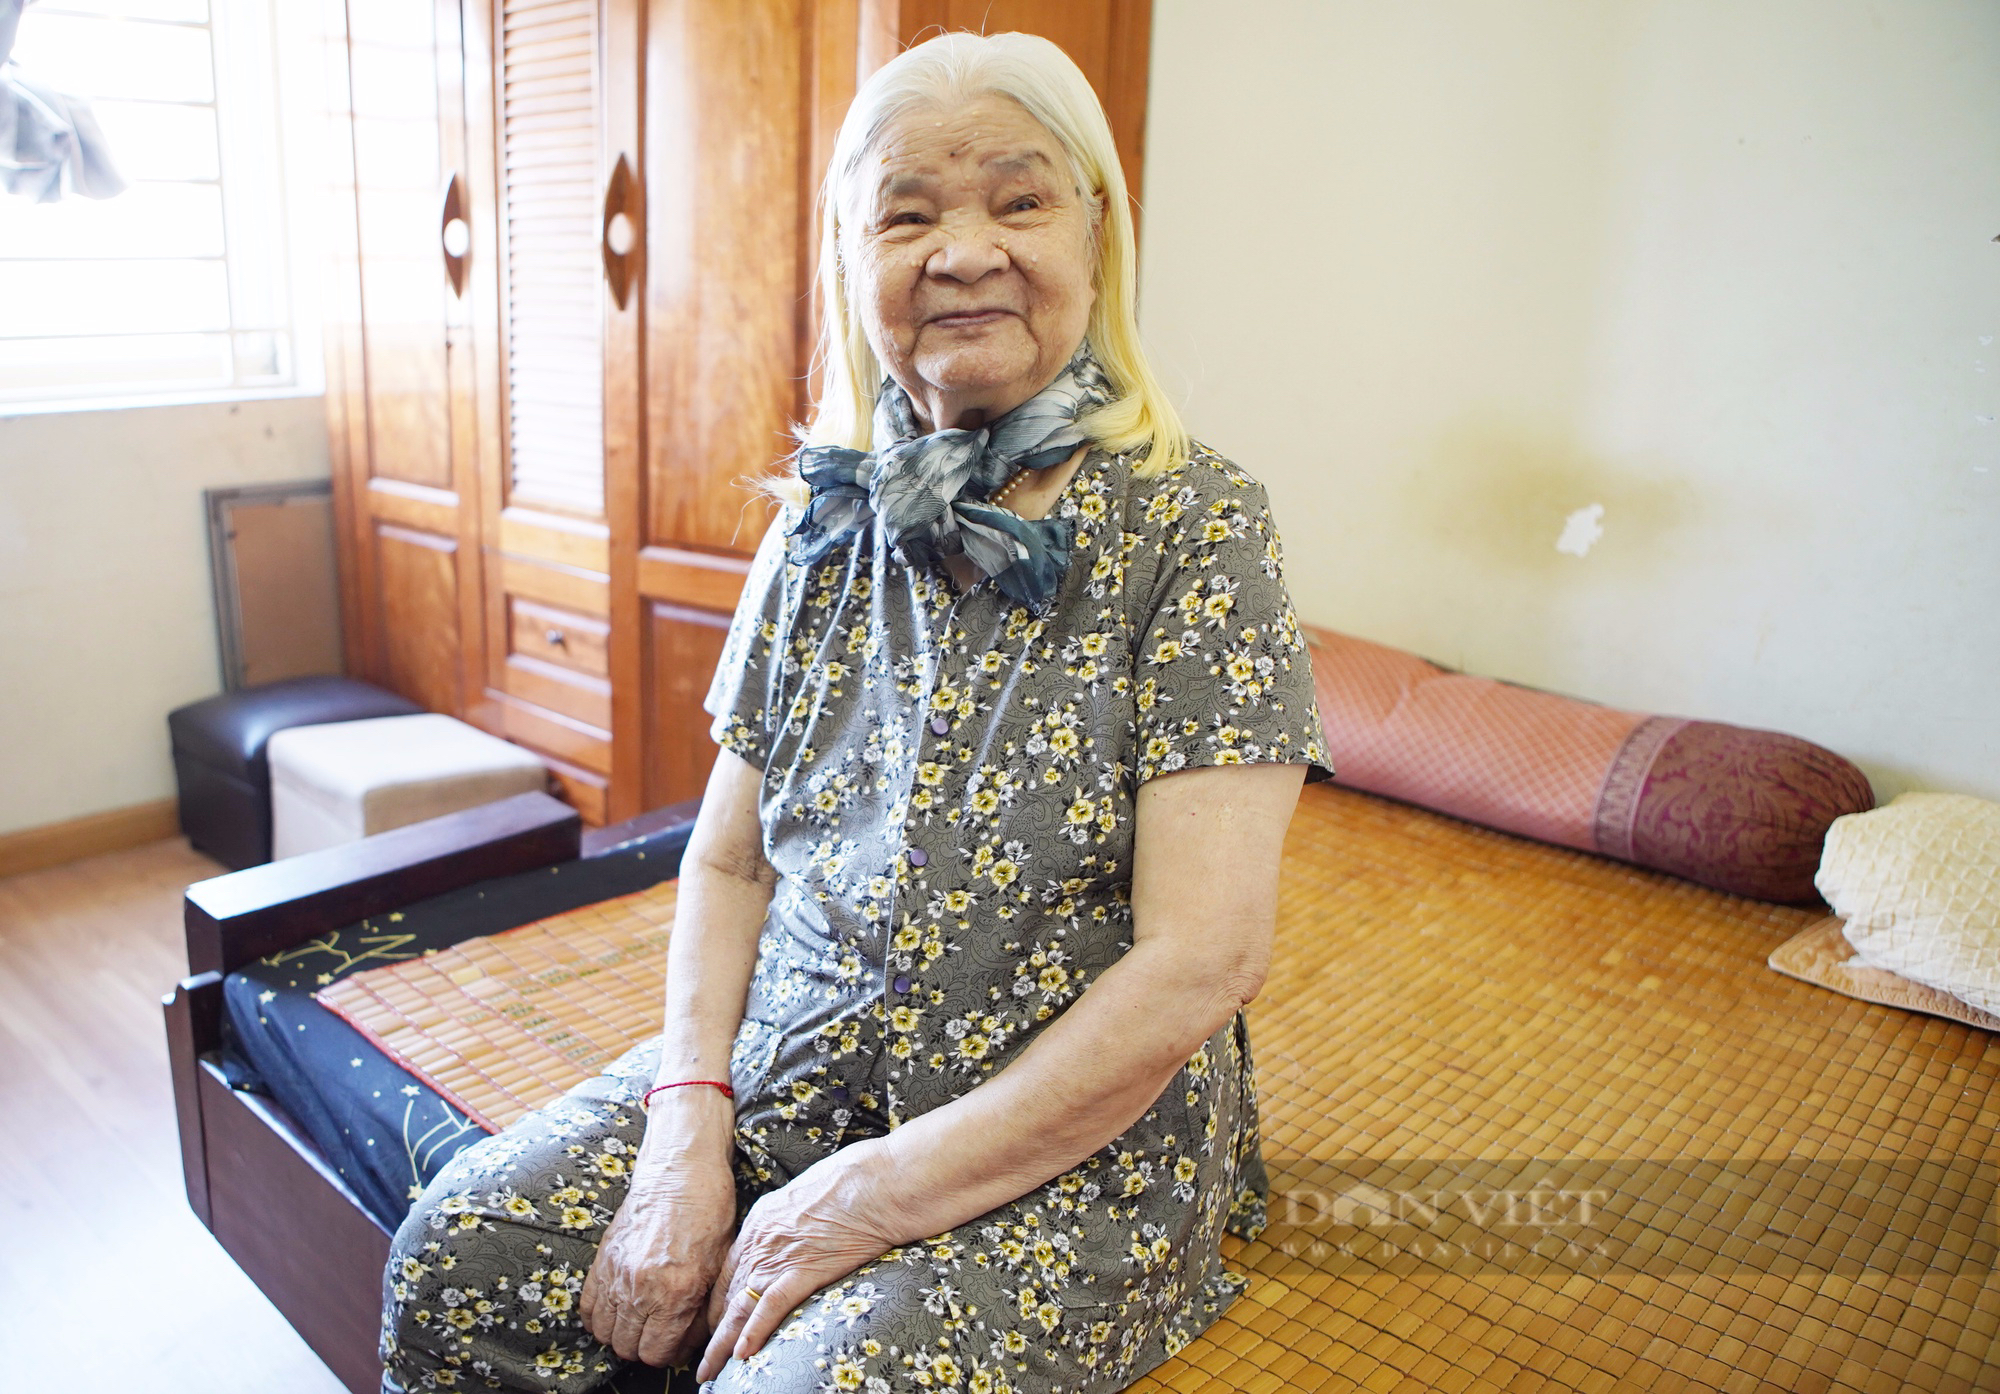 Xúc động câu chuyện phía sau bà lão 93 tuổi hiến mái tóc nâng niu gần đời người cho bệnh nhân ung thư - Ảnh 2.